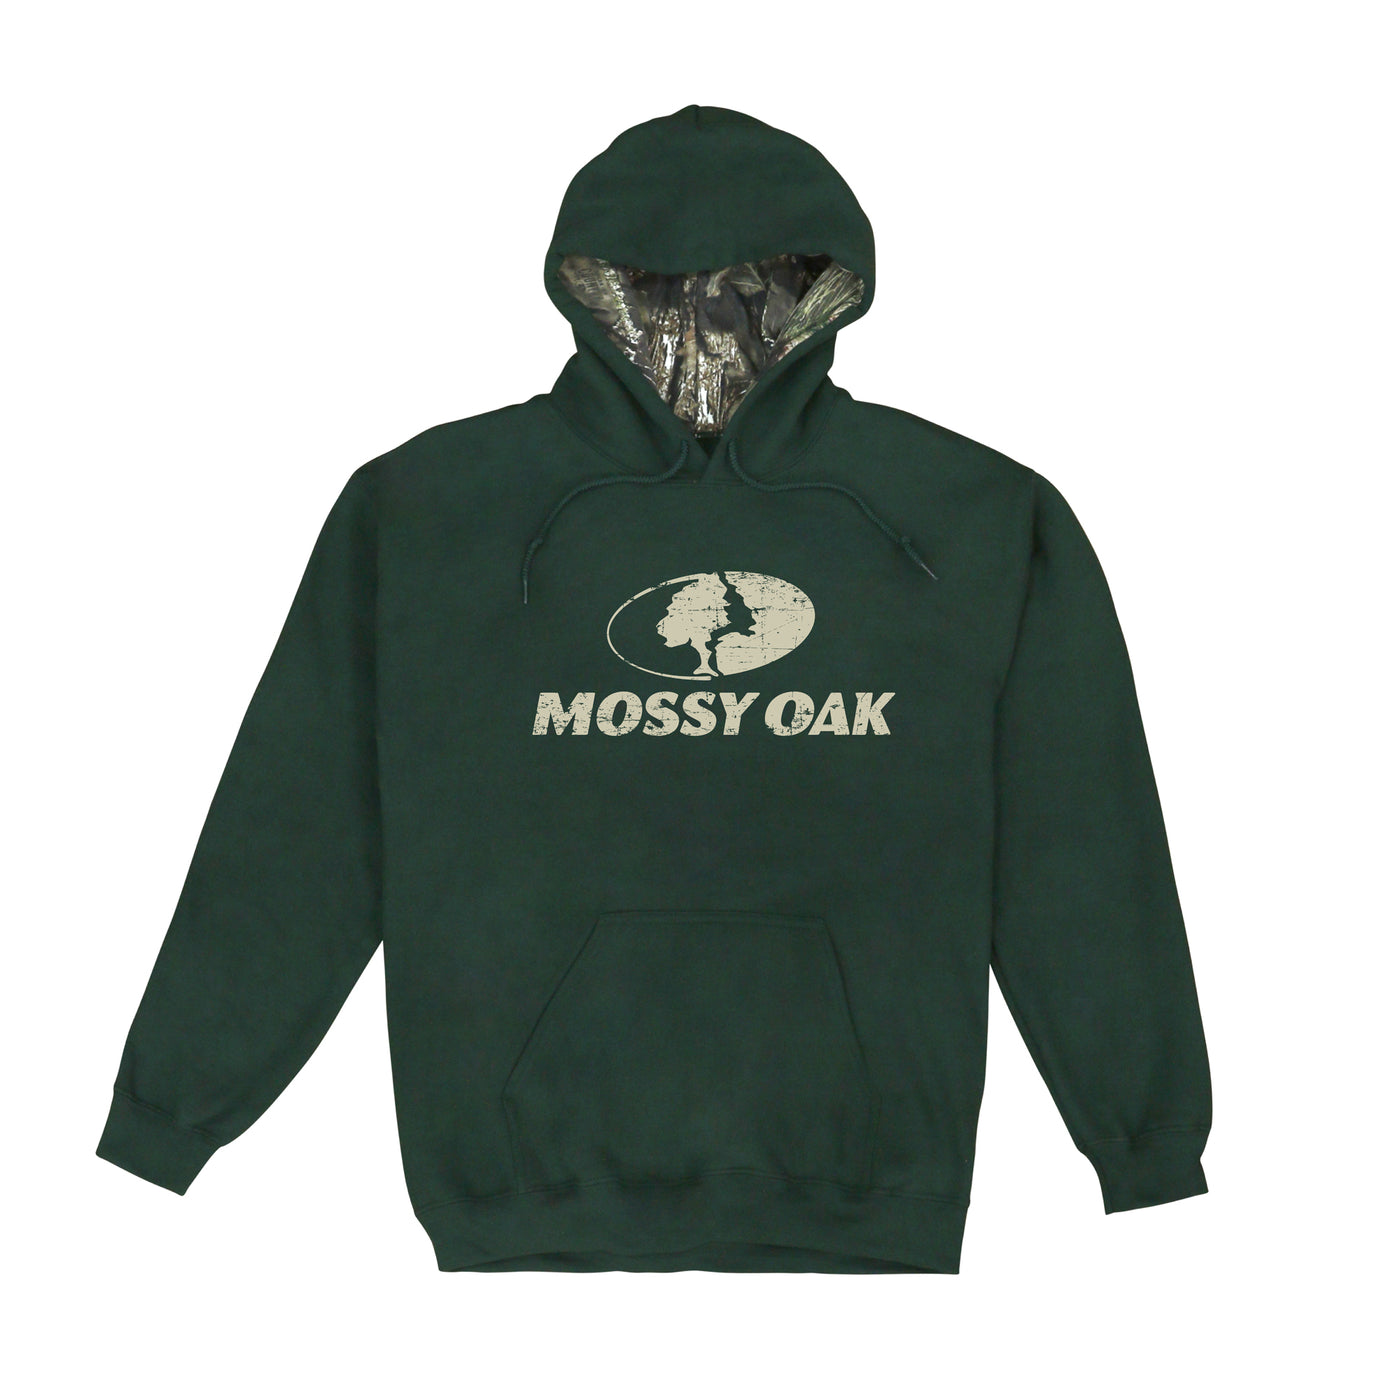 Mossy Oak Brand Hoodie – The Mossy Oak Store